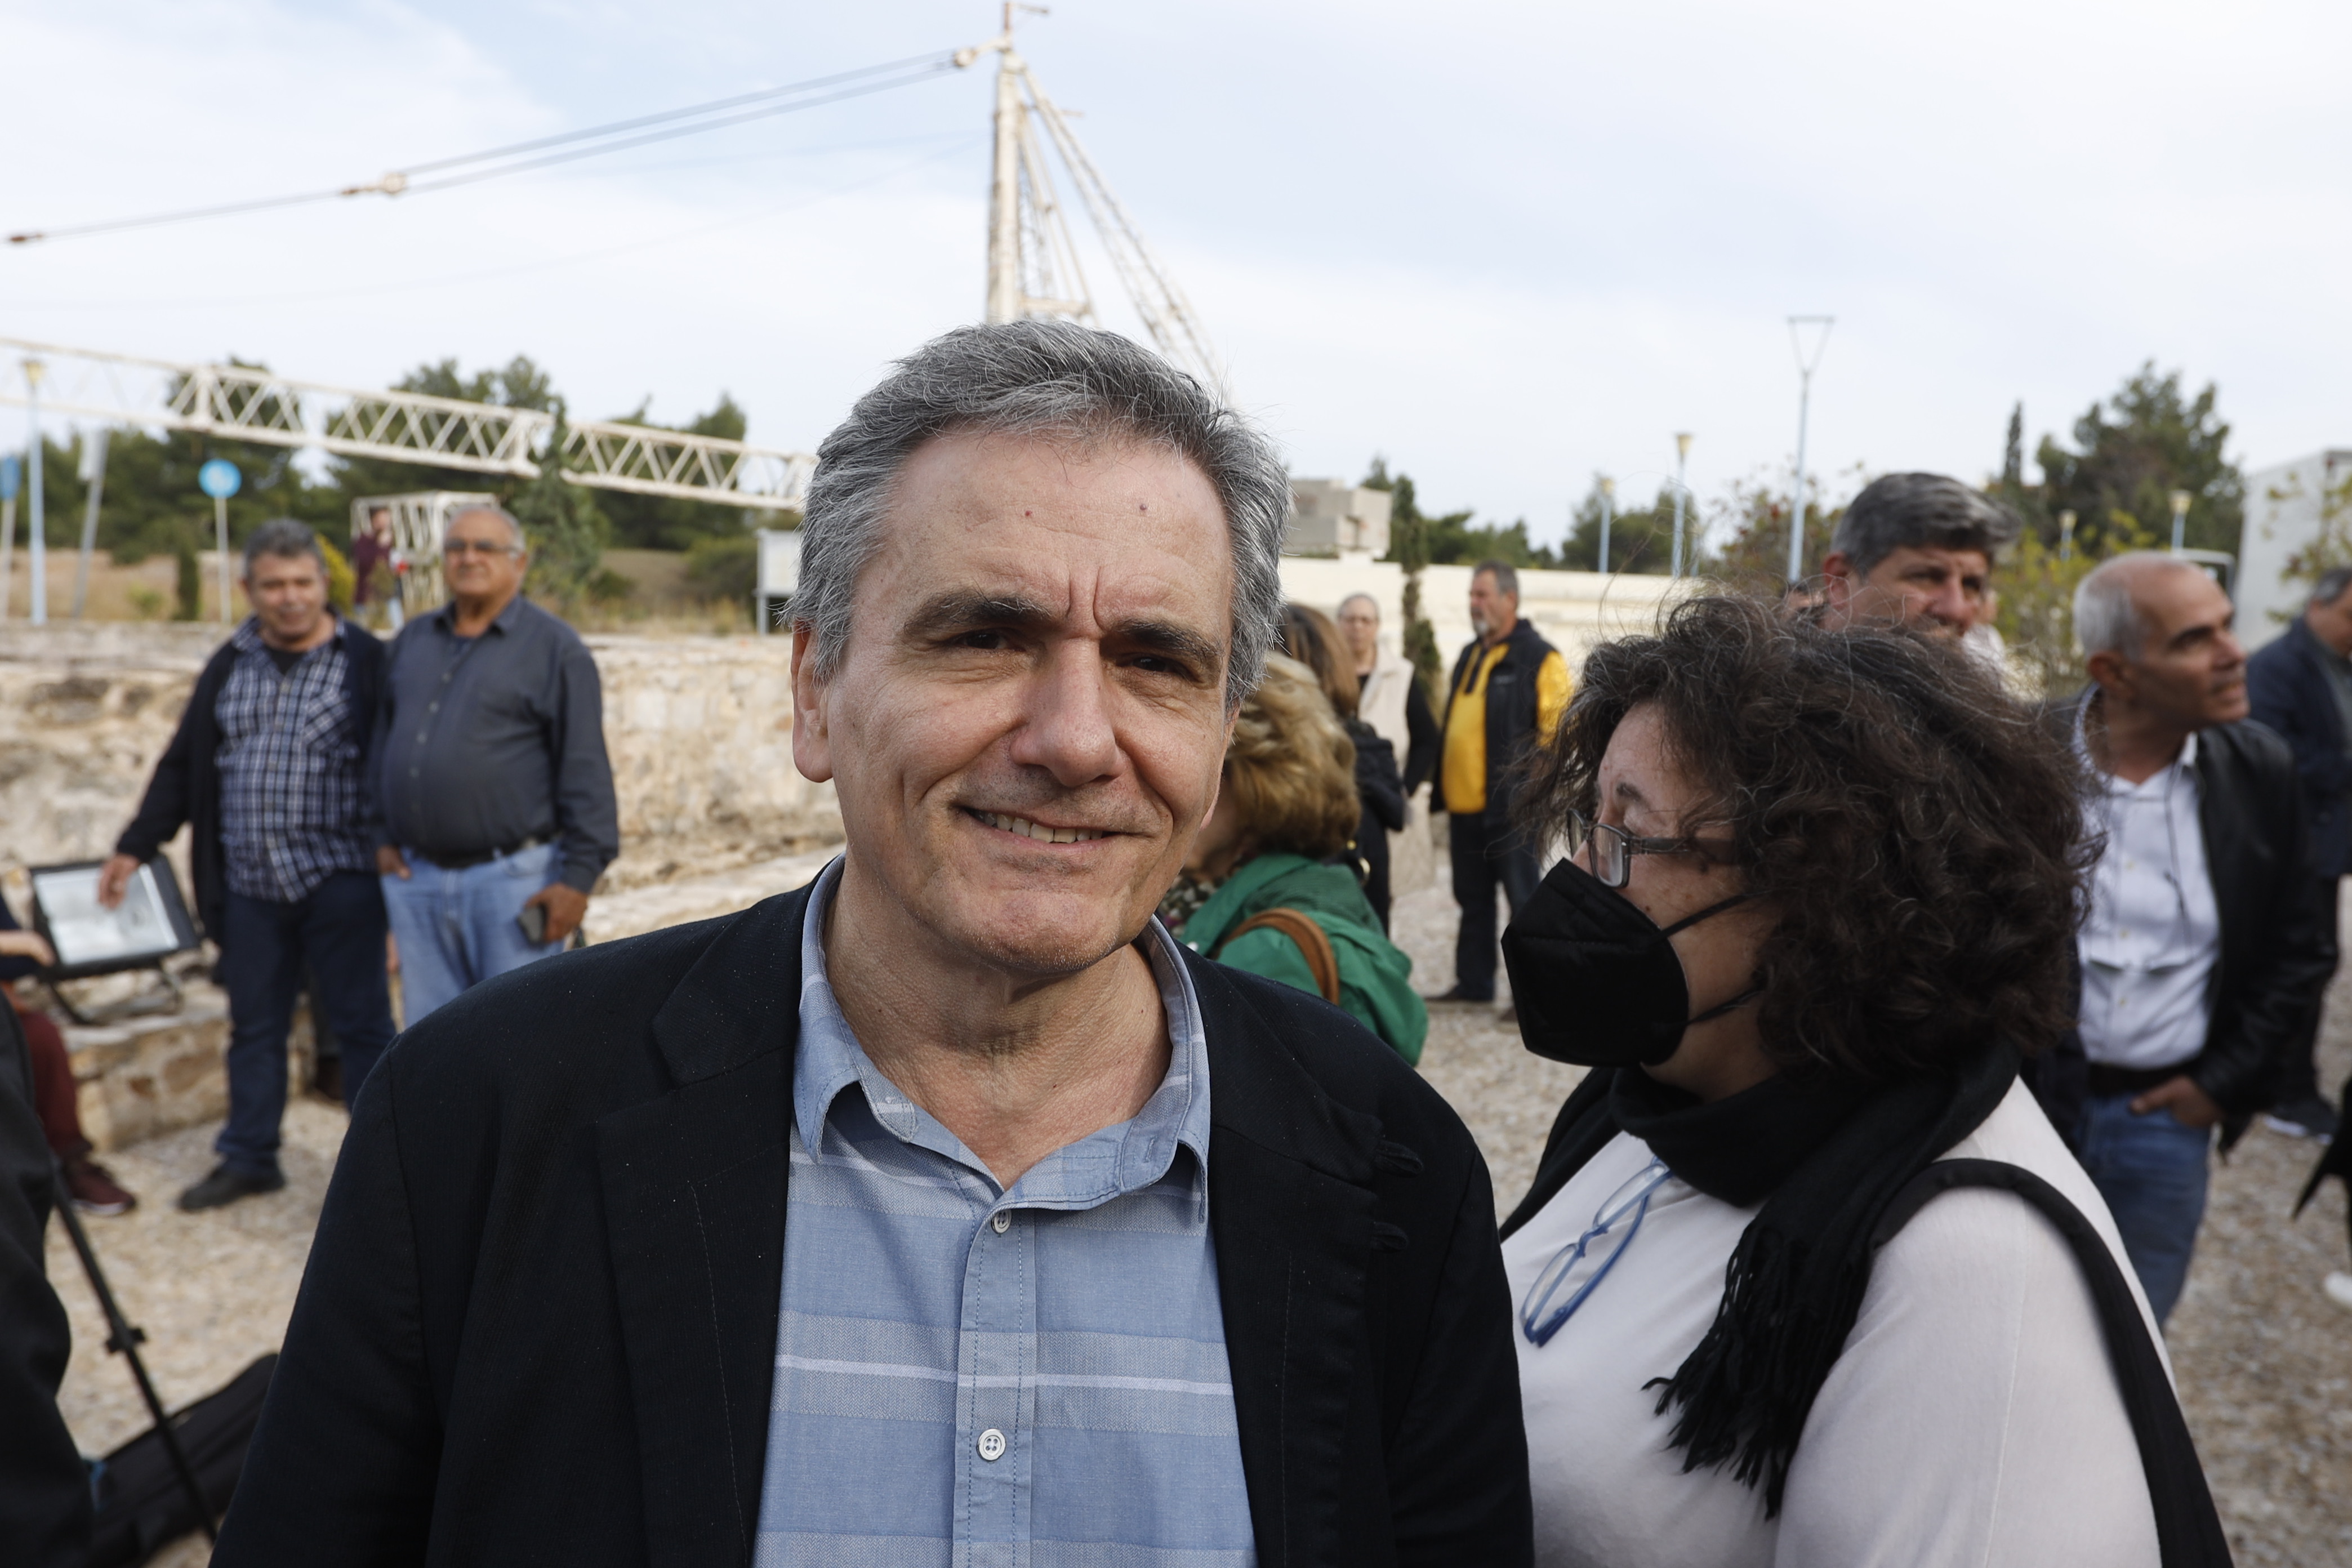 Κατρούγκαλος: Αντιδράσεις από τους ελεύθερους επαγγελματίες γαι τη δήλωσή του – Τον «αδειάζουν» εντός ΣΥΡΙΖΑ, η ανάρτηση Τσακαλώτου